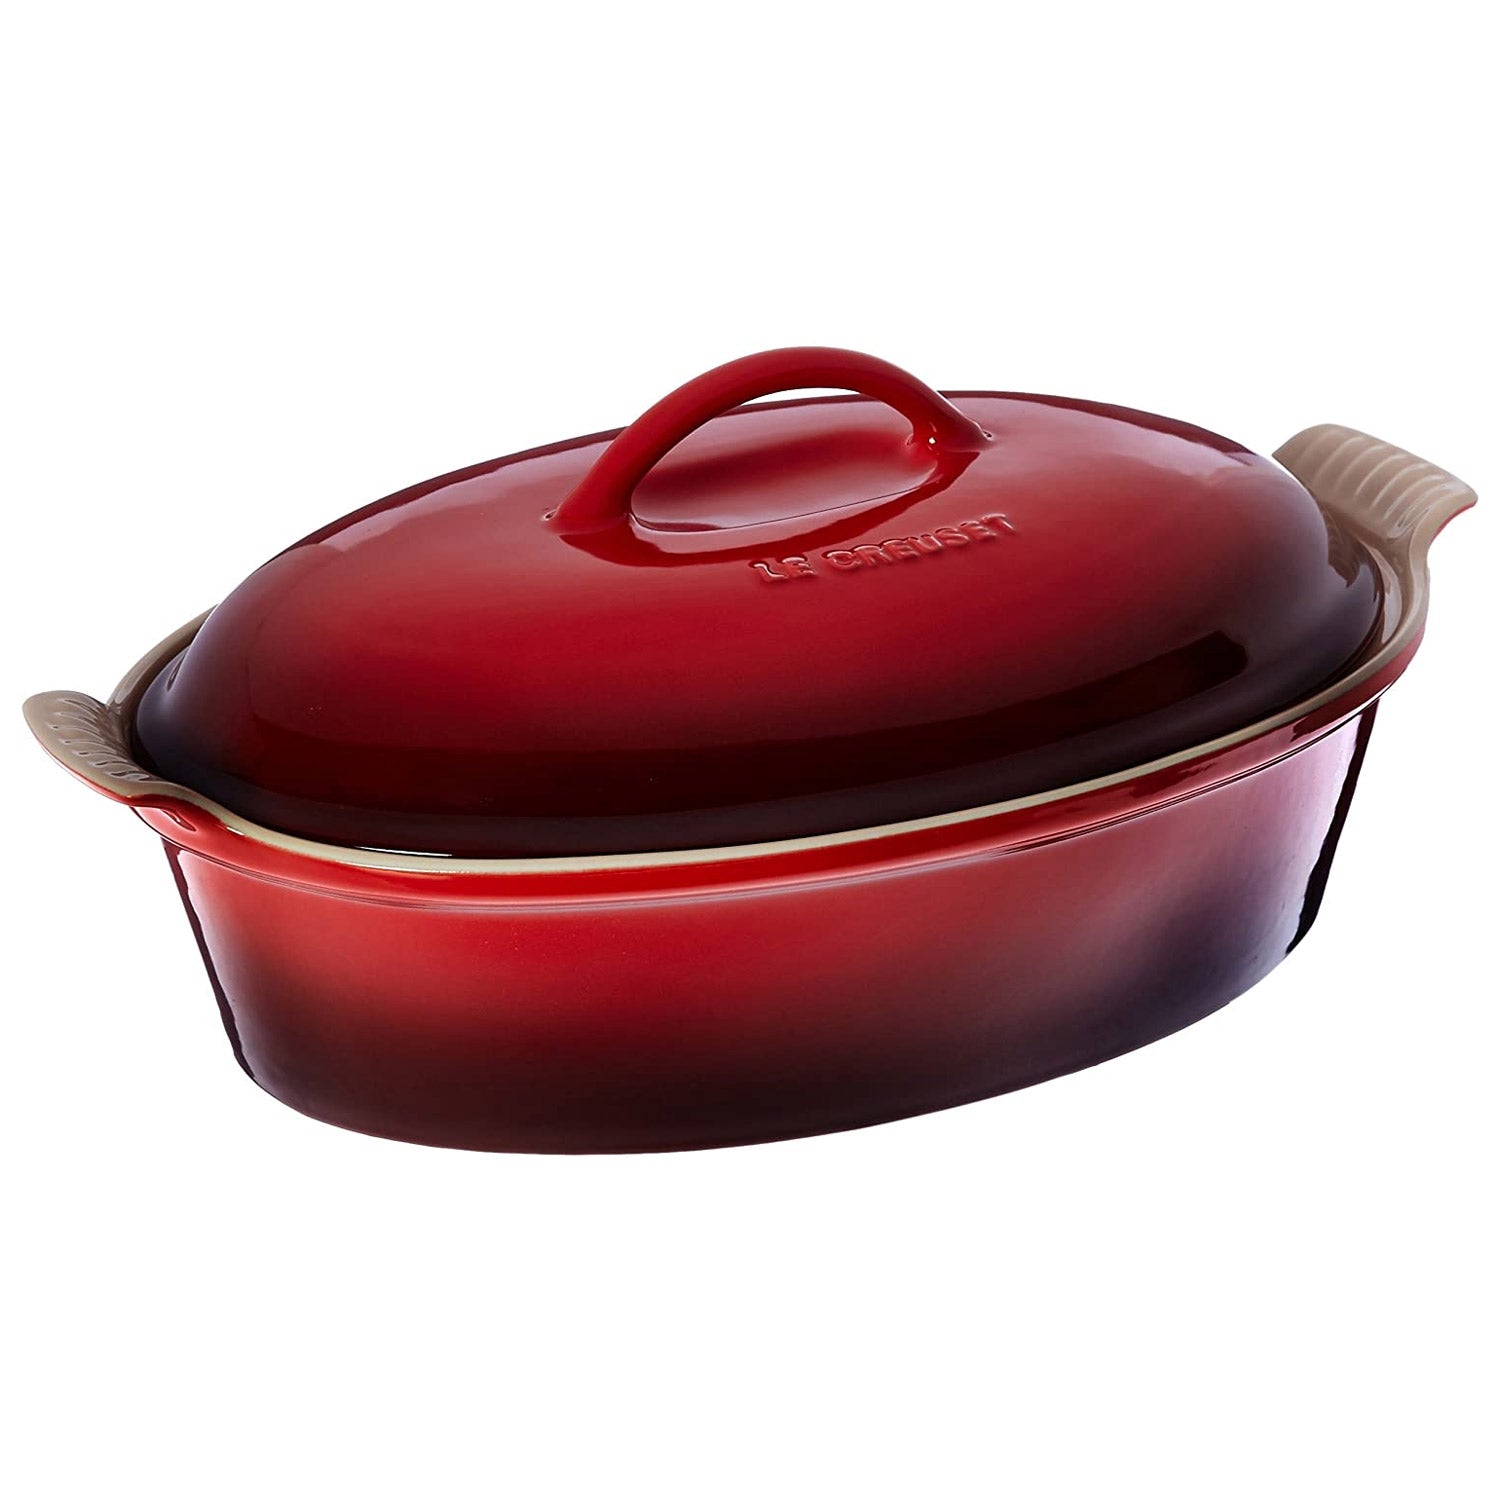 Crock Pot 2.5 Quart Red Stoneware Bake Pan